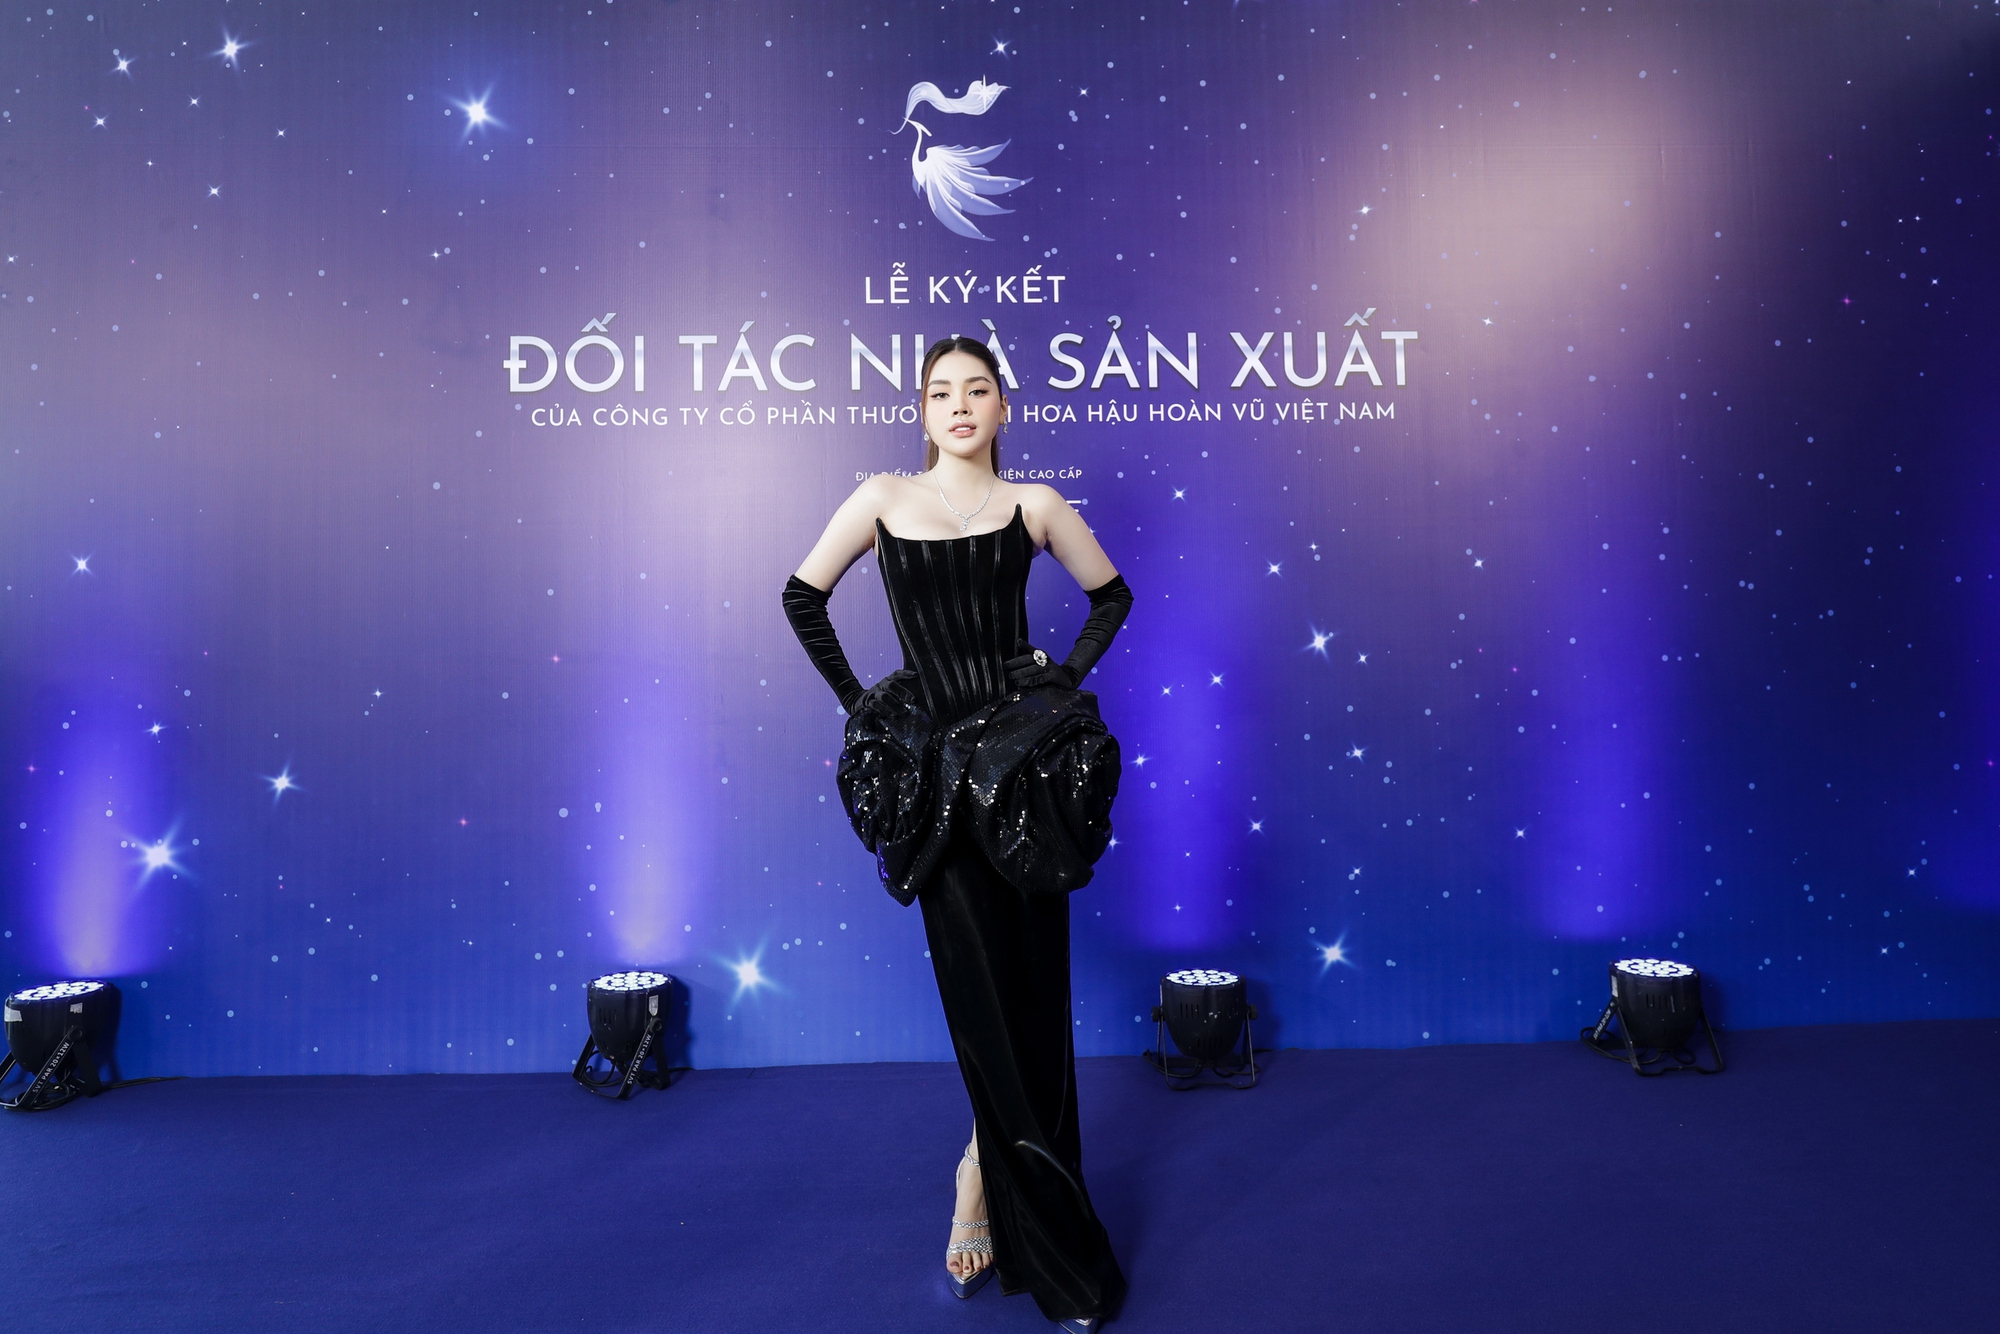 Hương Giang - Dược sĩ Tiến chính thức là NSX Miss Universe Vietnam, Lan Khuê rời ghế giám đốc điều hành- Ảnh 6.